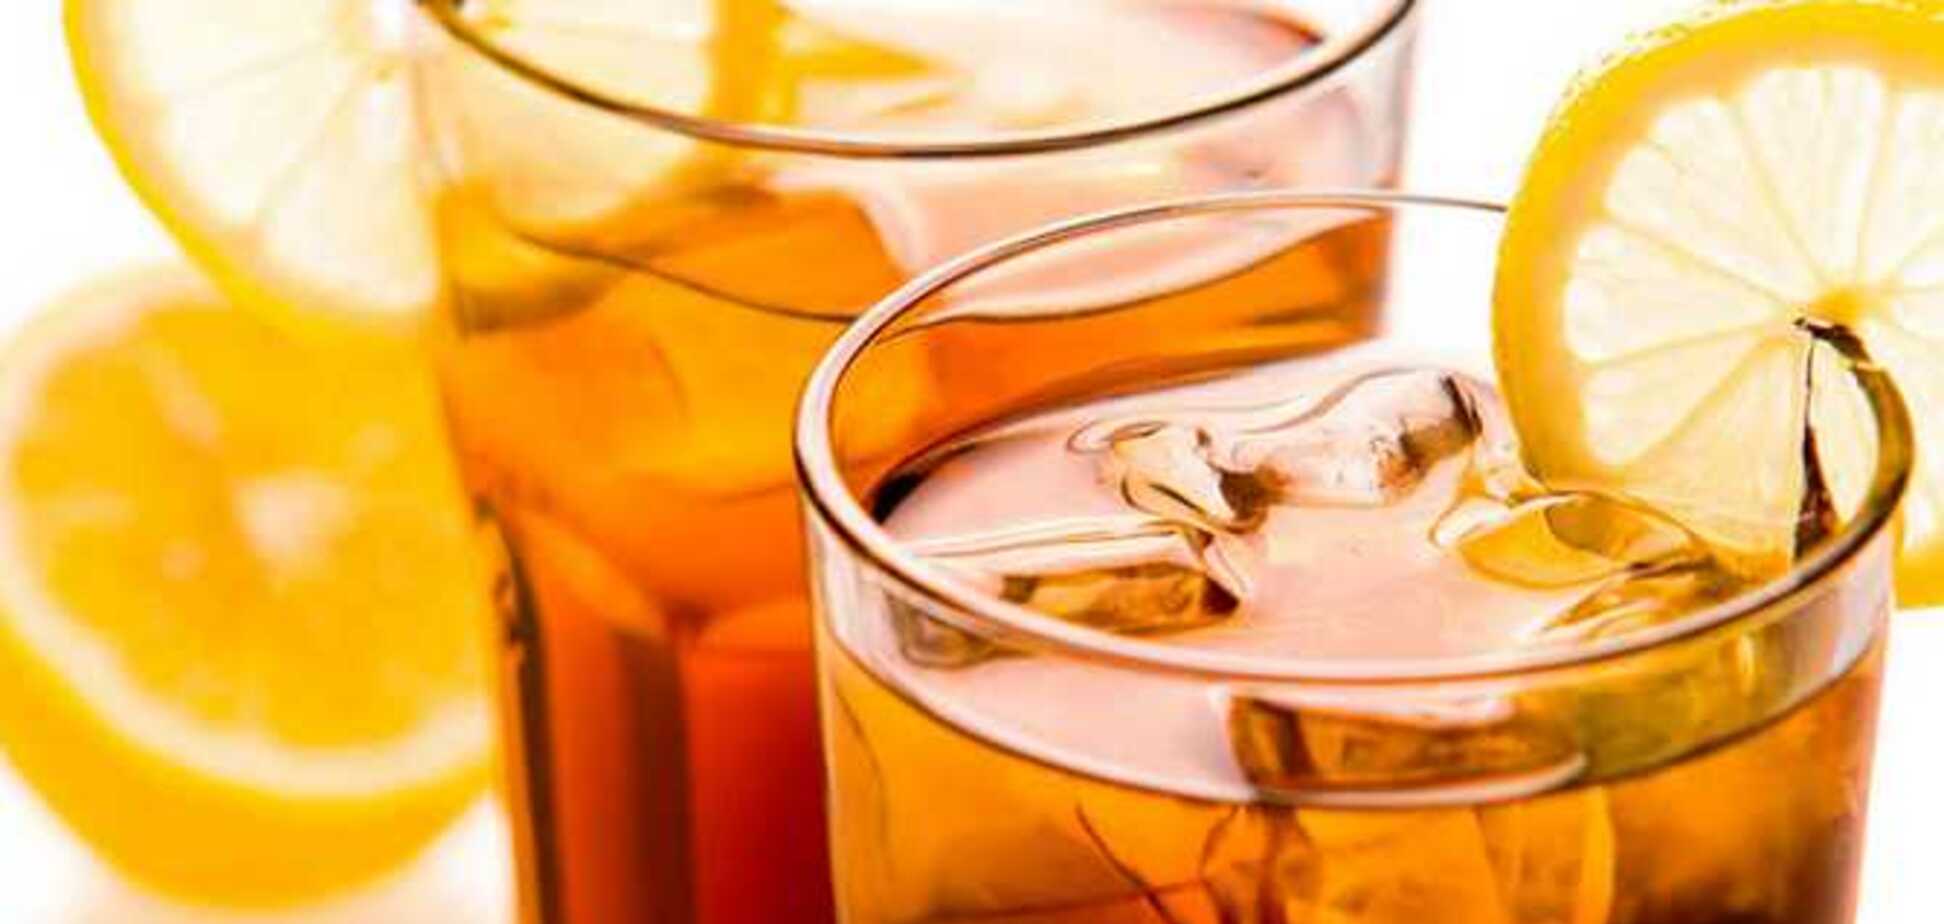 Ученые назвали самый опасный алкогольный напиток